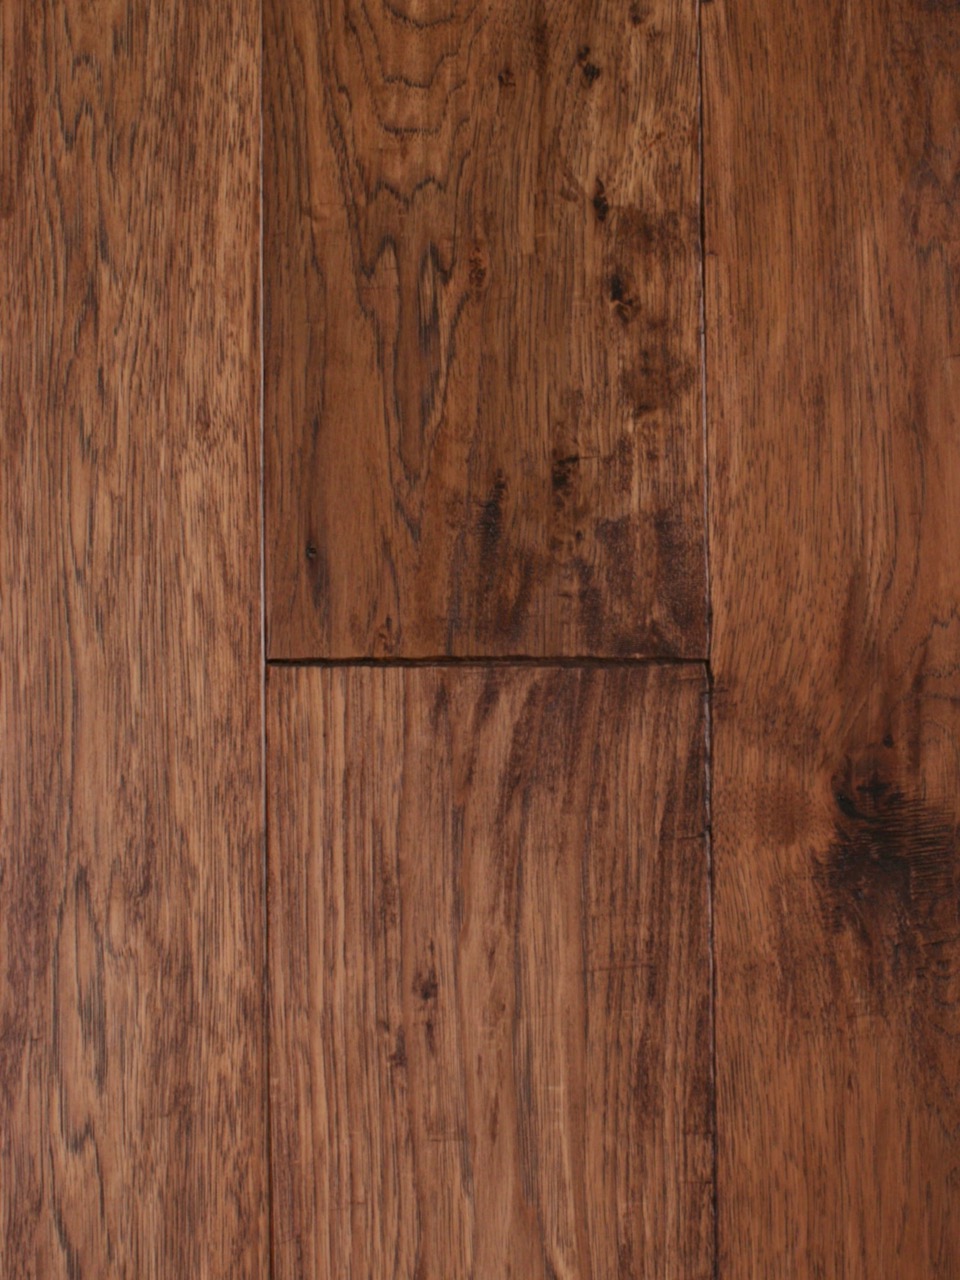 Walnut Sample 1 Kristynik Hardwood Flooring Austin Texas